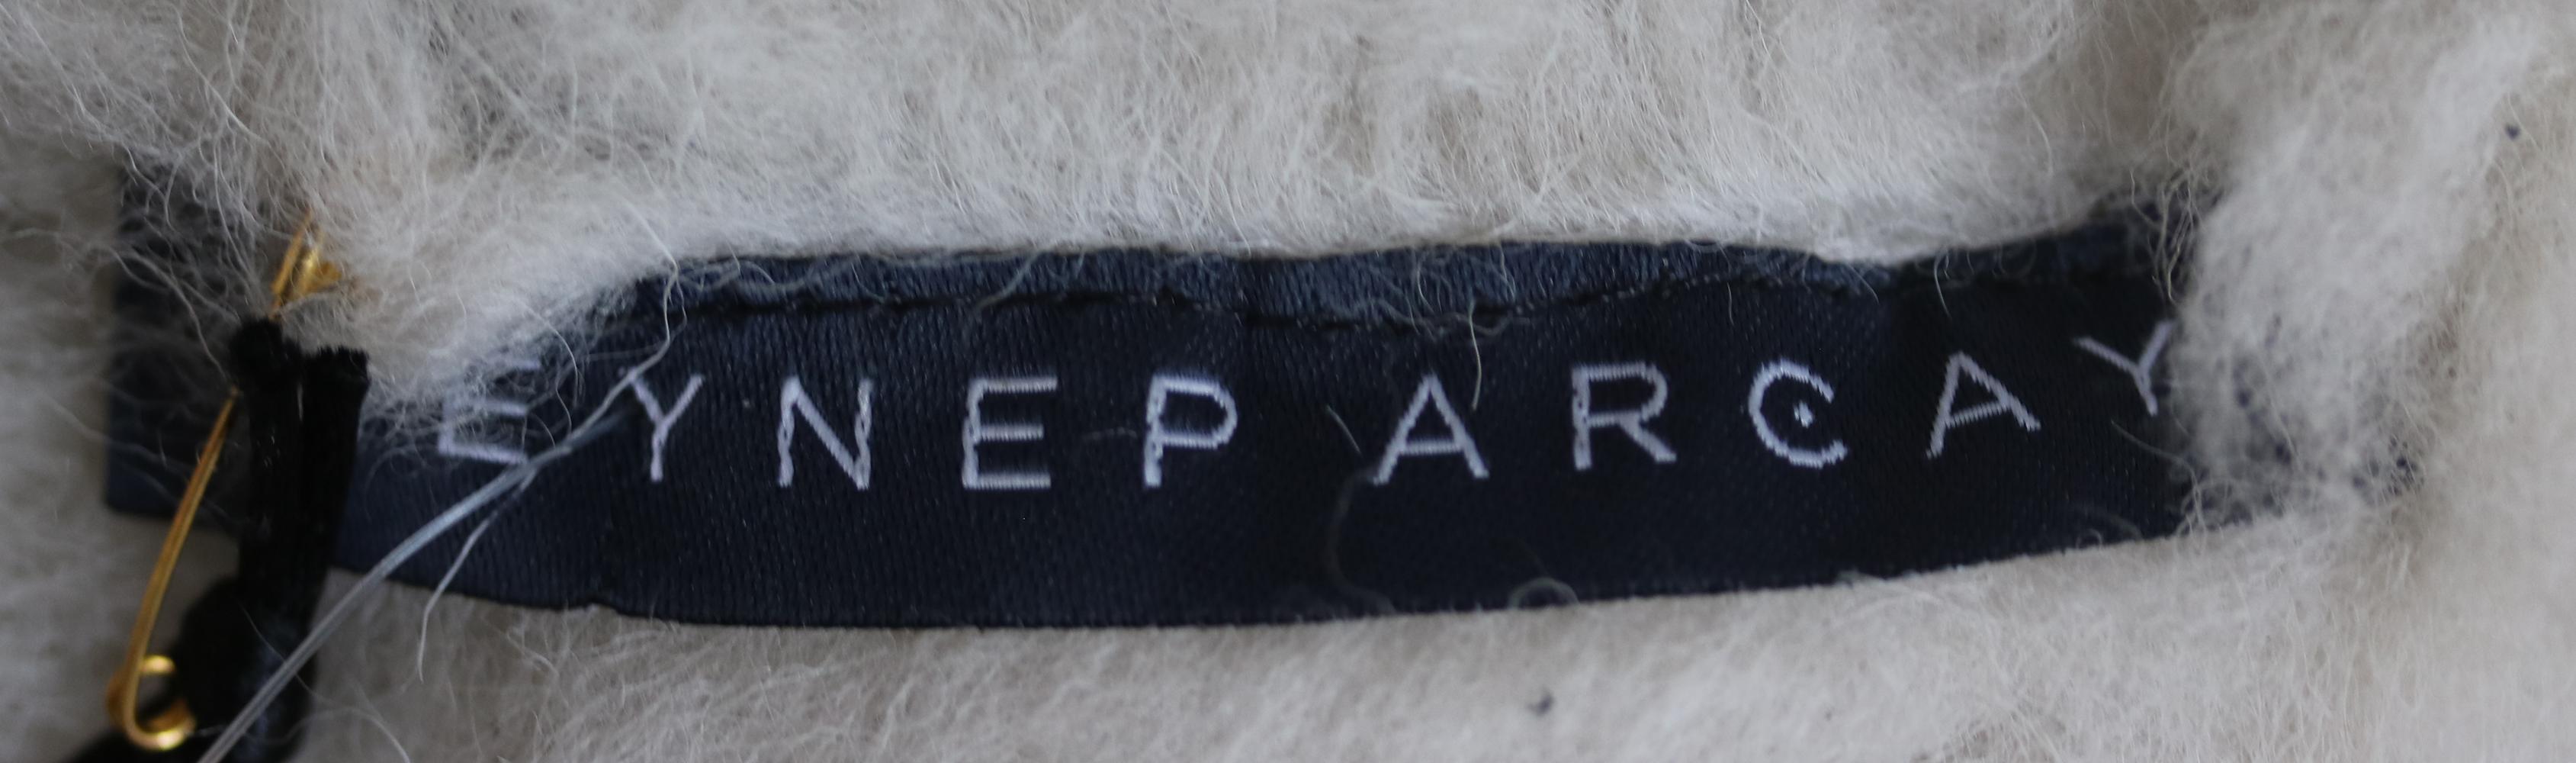 Zeynep Arcay Oversized Shearling Leather Jacket 1